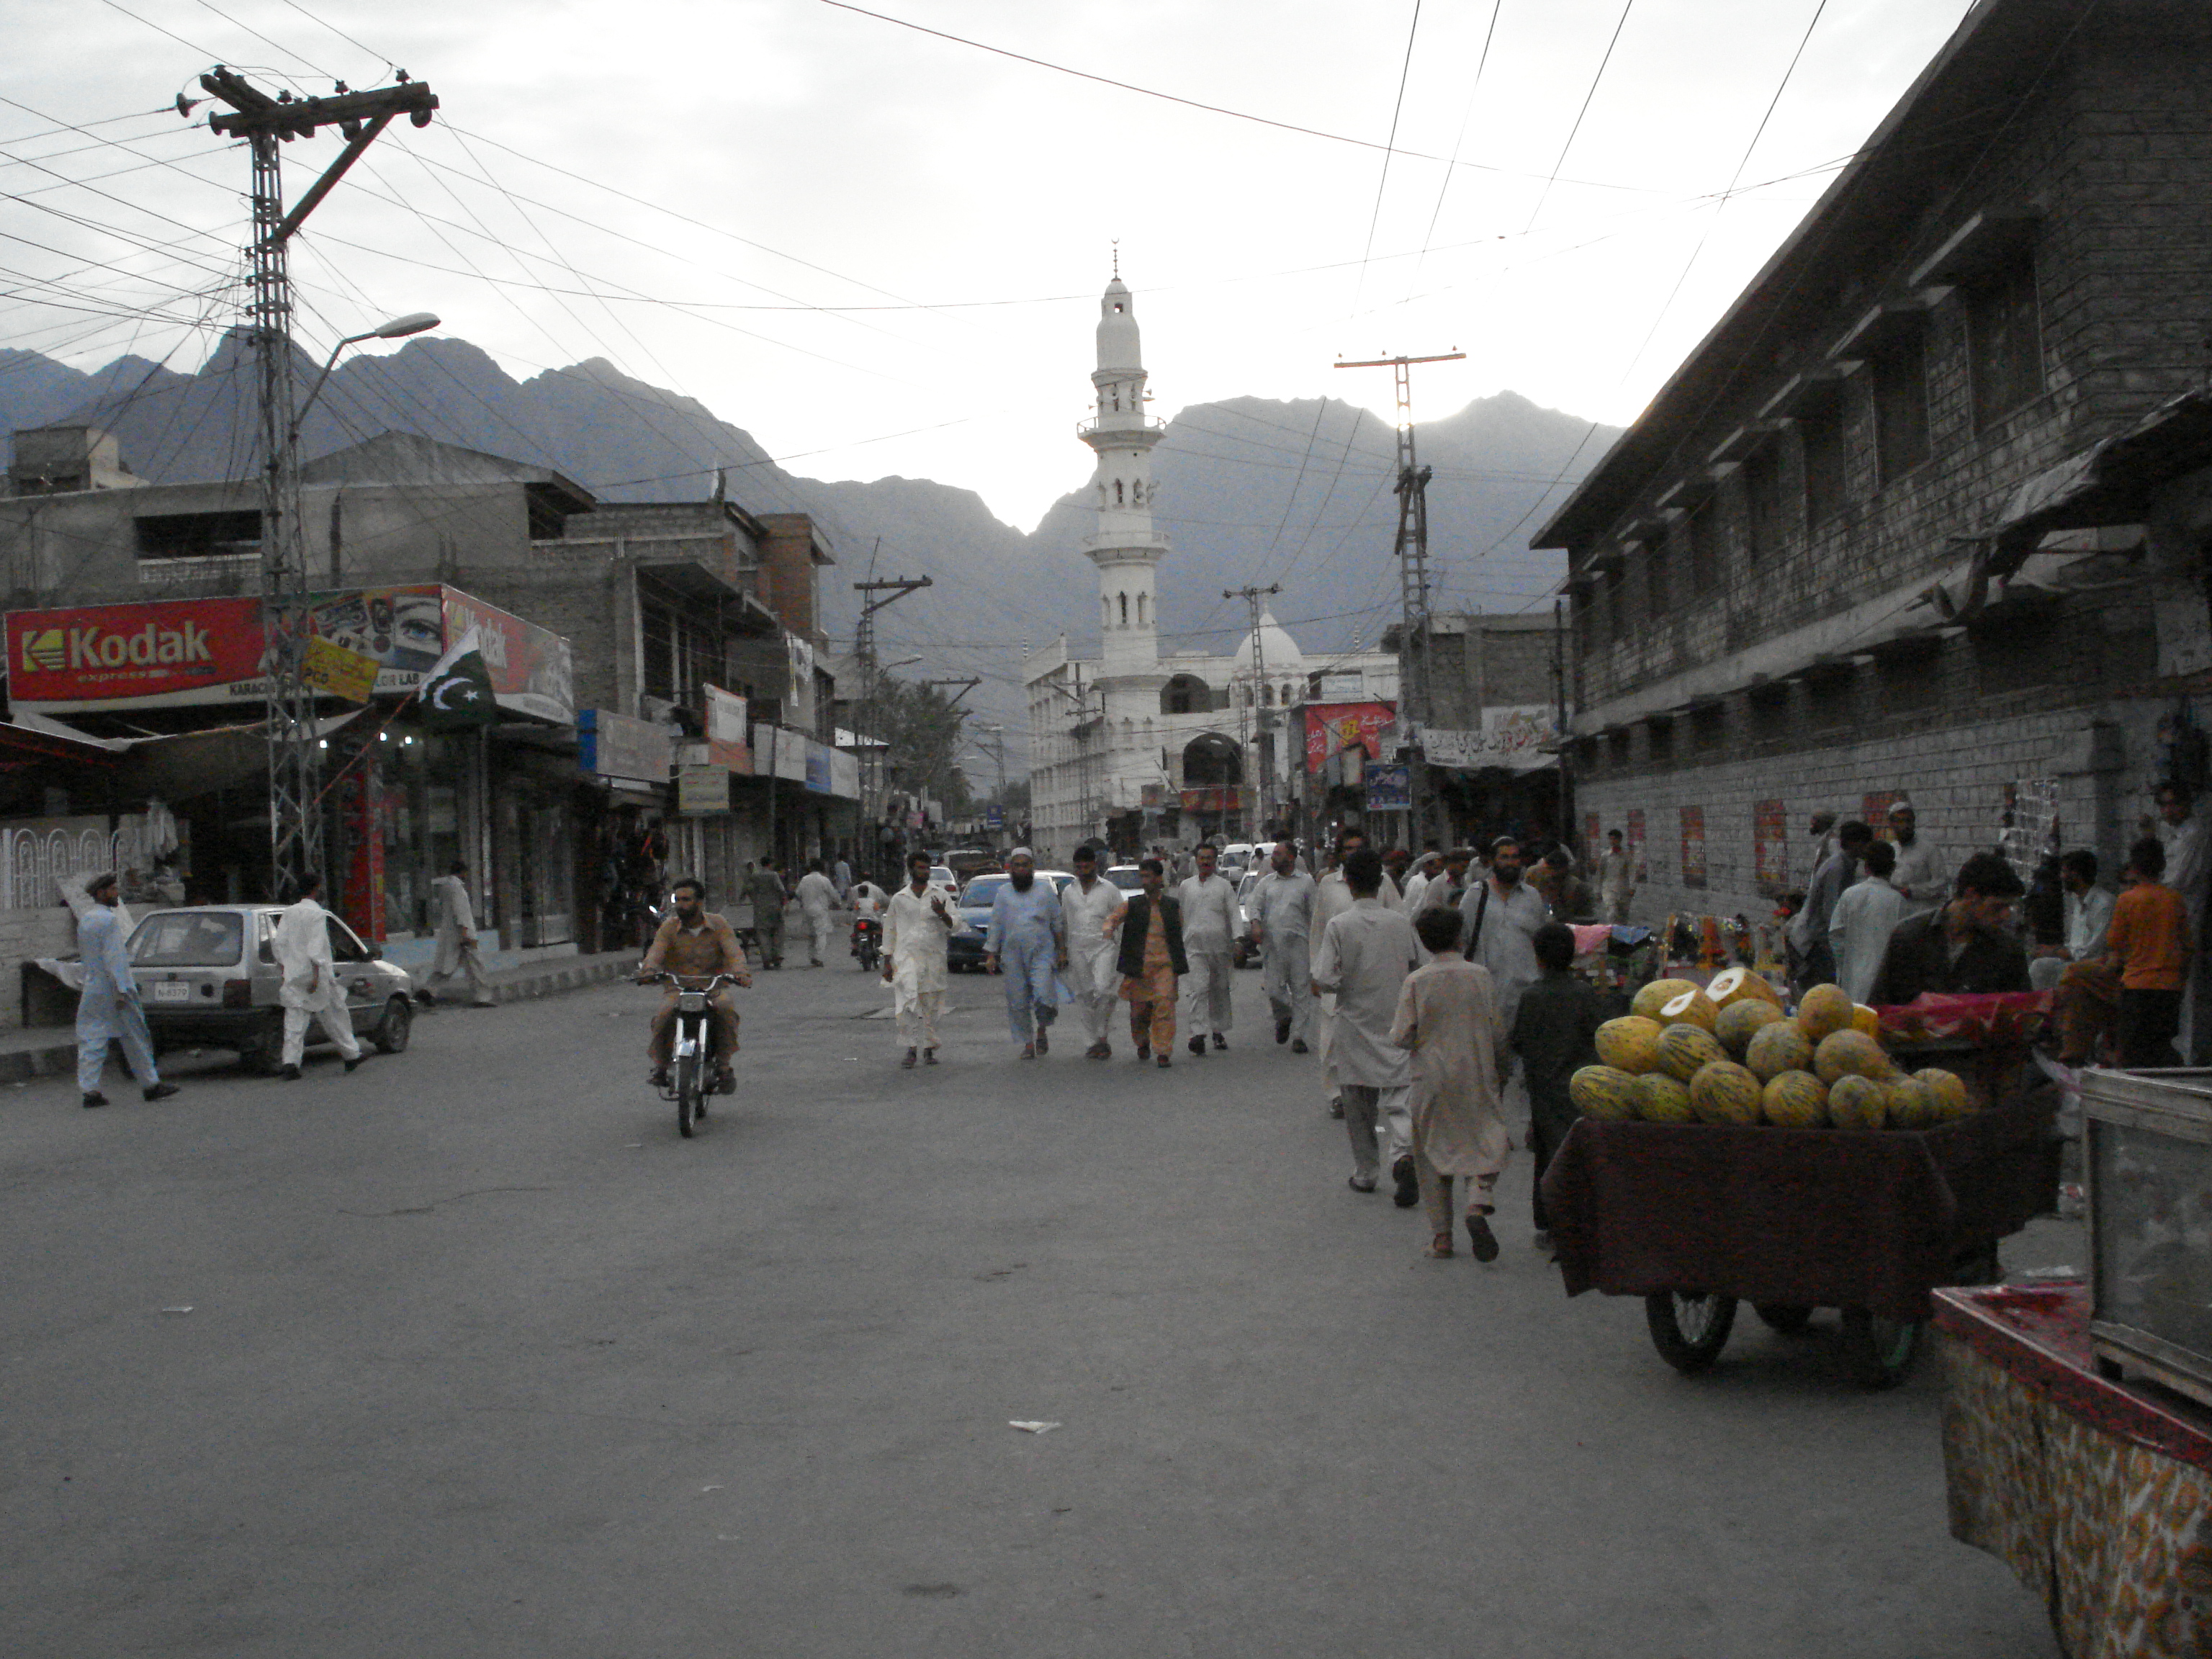 Moc žen na ulici nepotkáte - město Gilgit